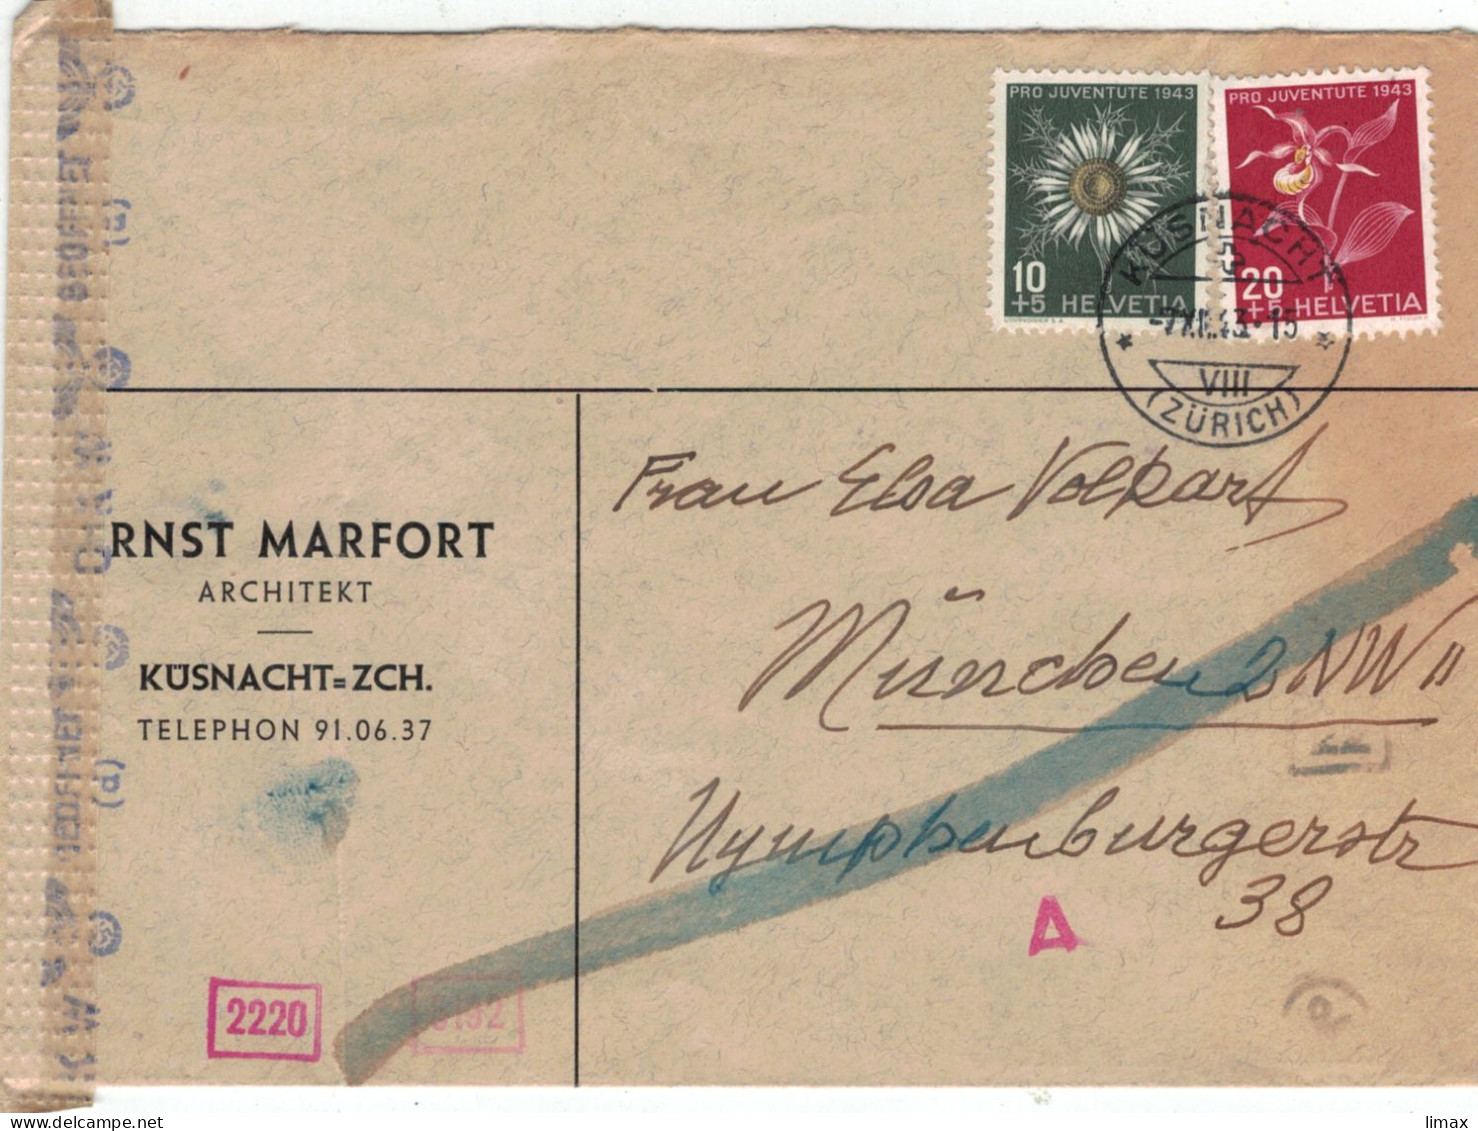 Ernst Marfort Küsnacht Architekt 1943 > Volkart München - Chemische Zensur OKW - Frauenschuh Silberdistel - Covers & Documents